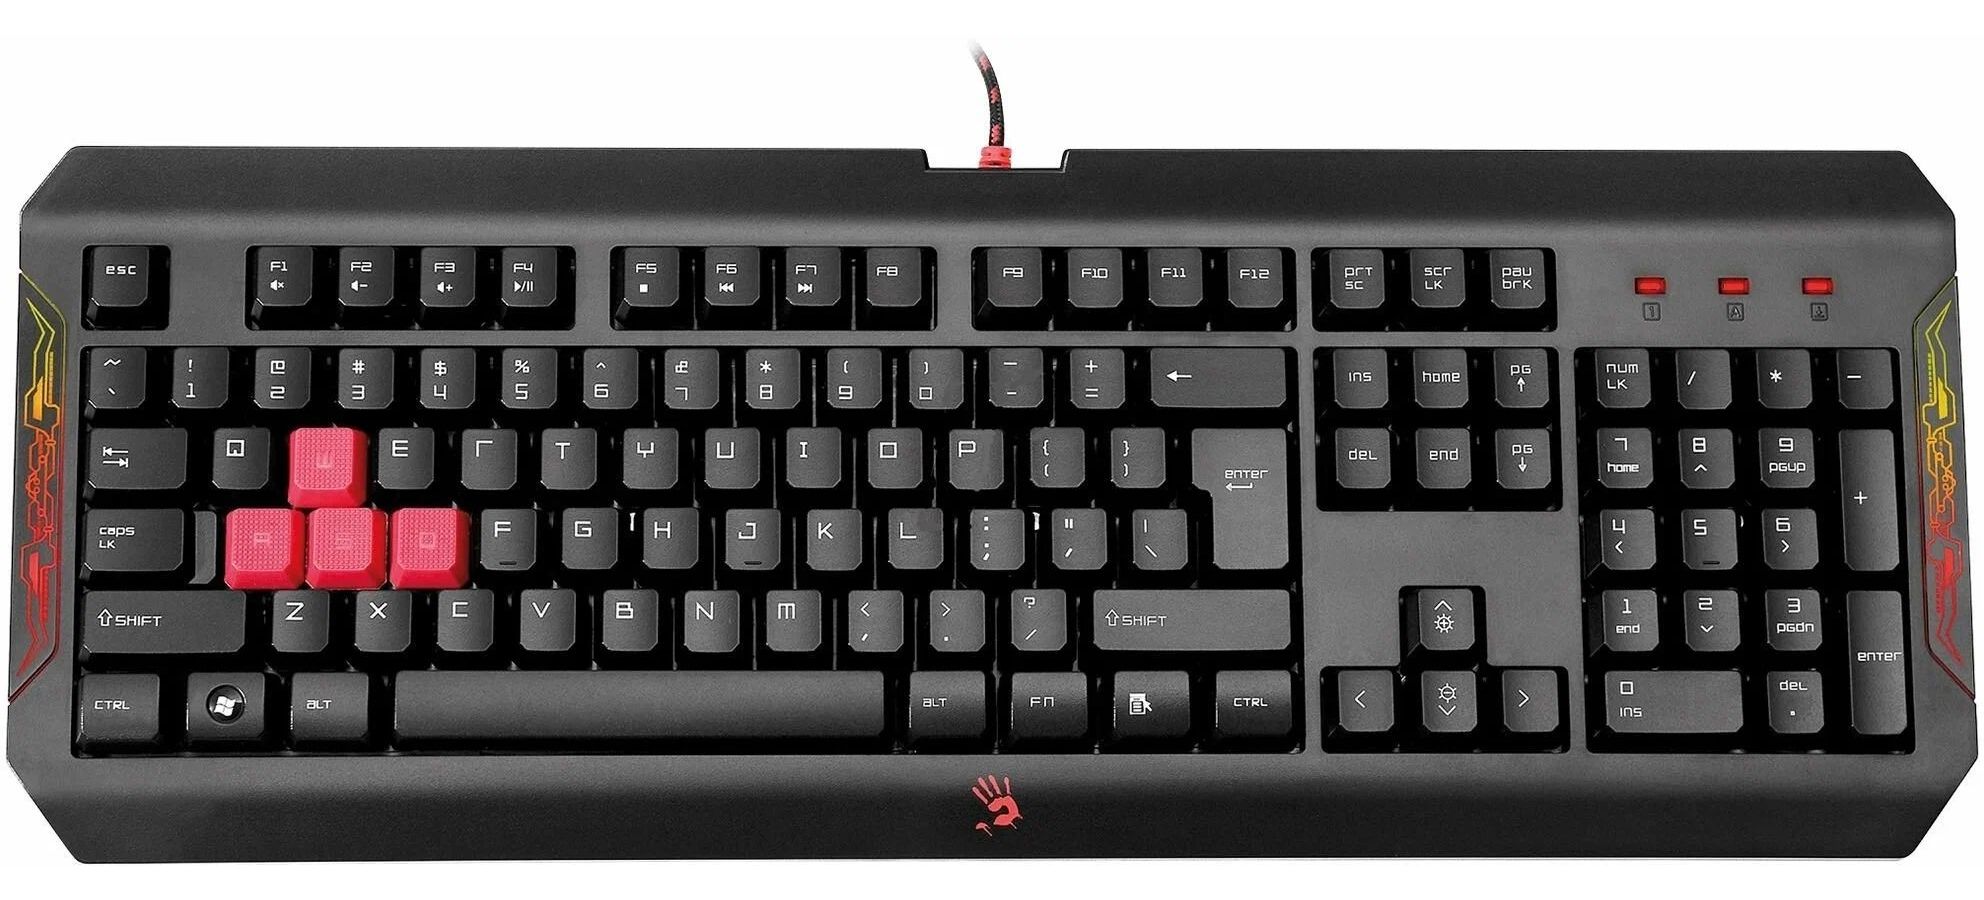 Клавиатура A4Tech Bloody Q100 черный 4x4 16 клавиш промышленный пользовательский usb атм металлическая клавиатура антивандальная цифровая клавиатура